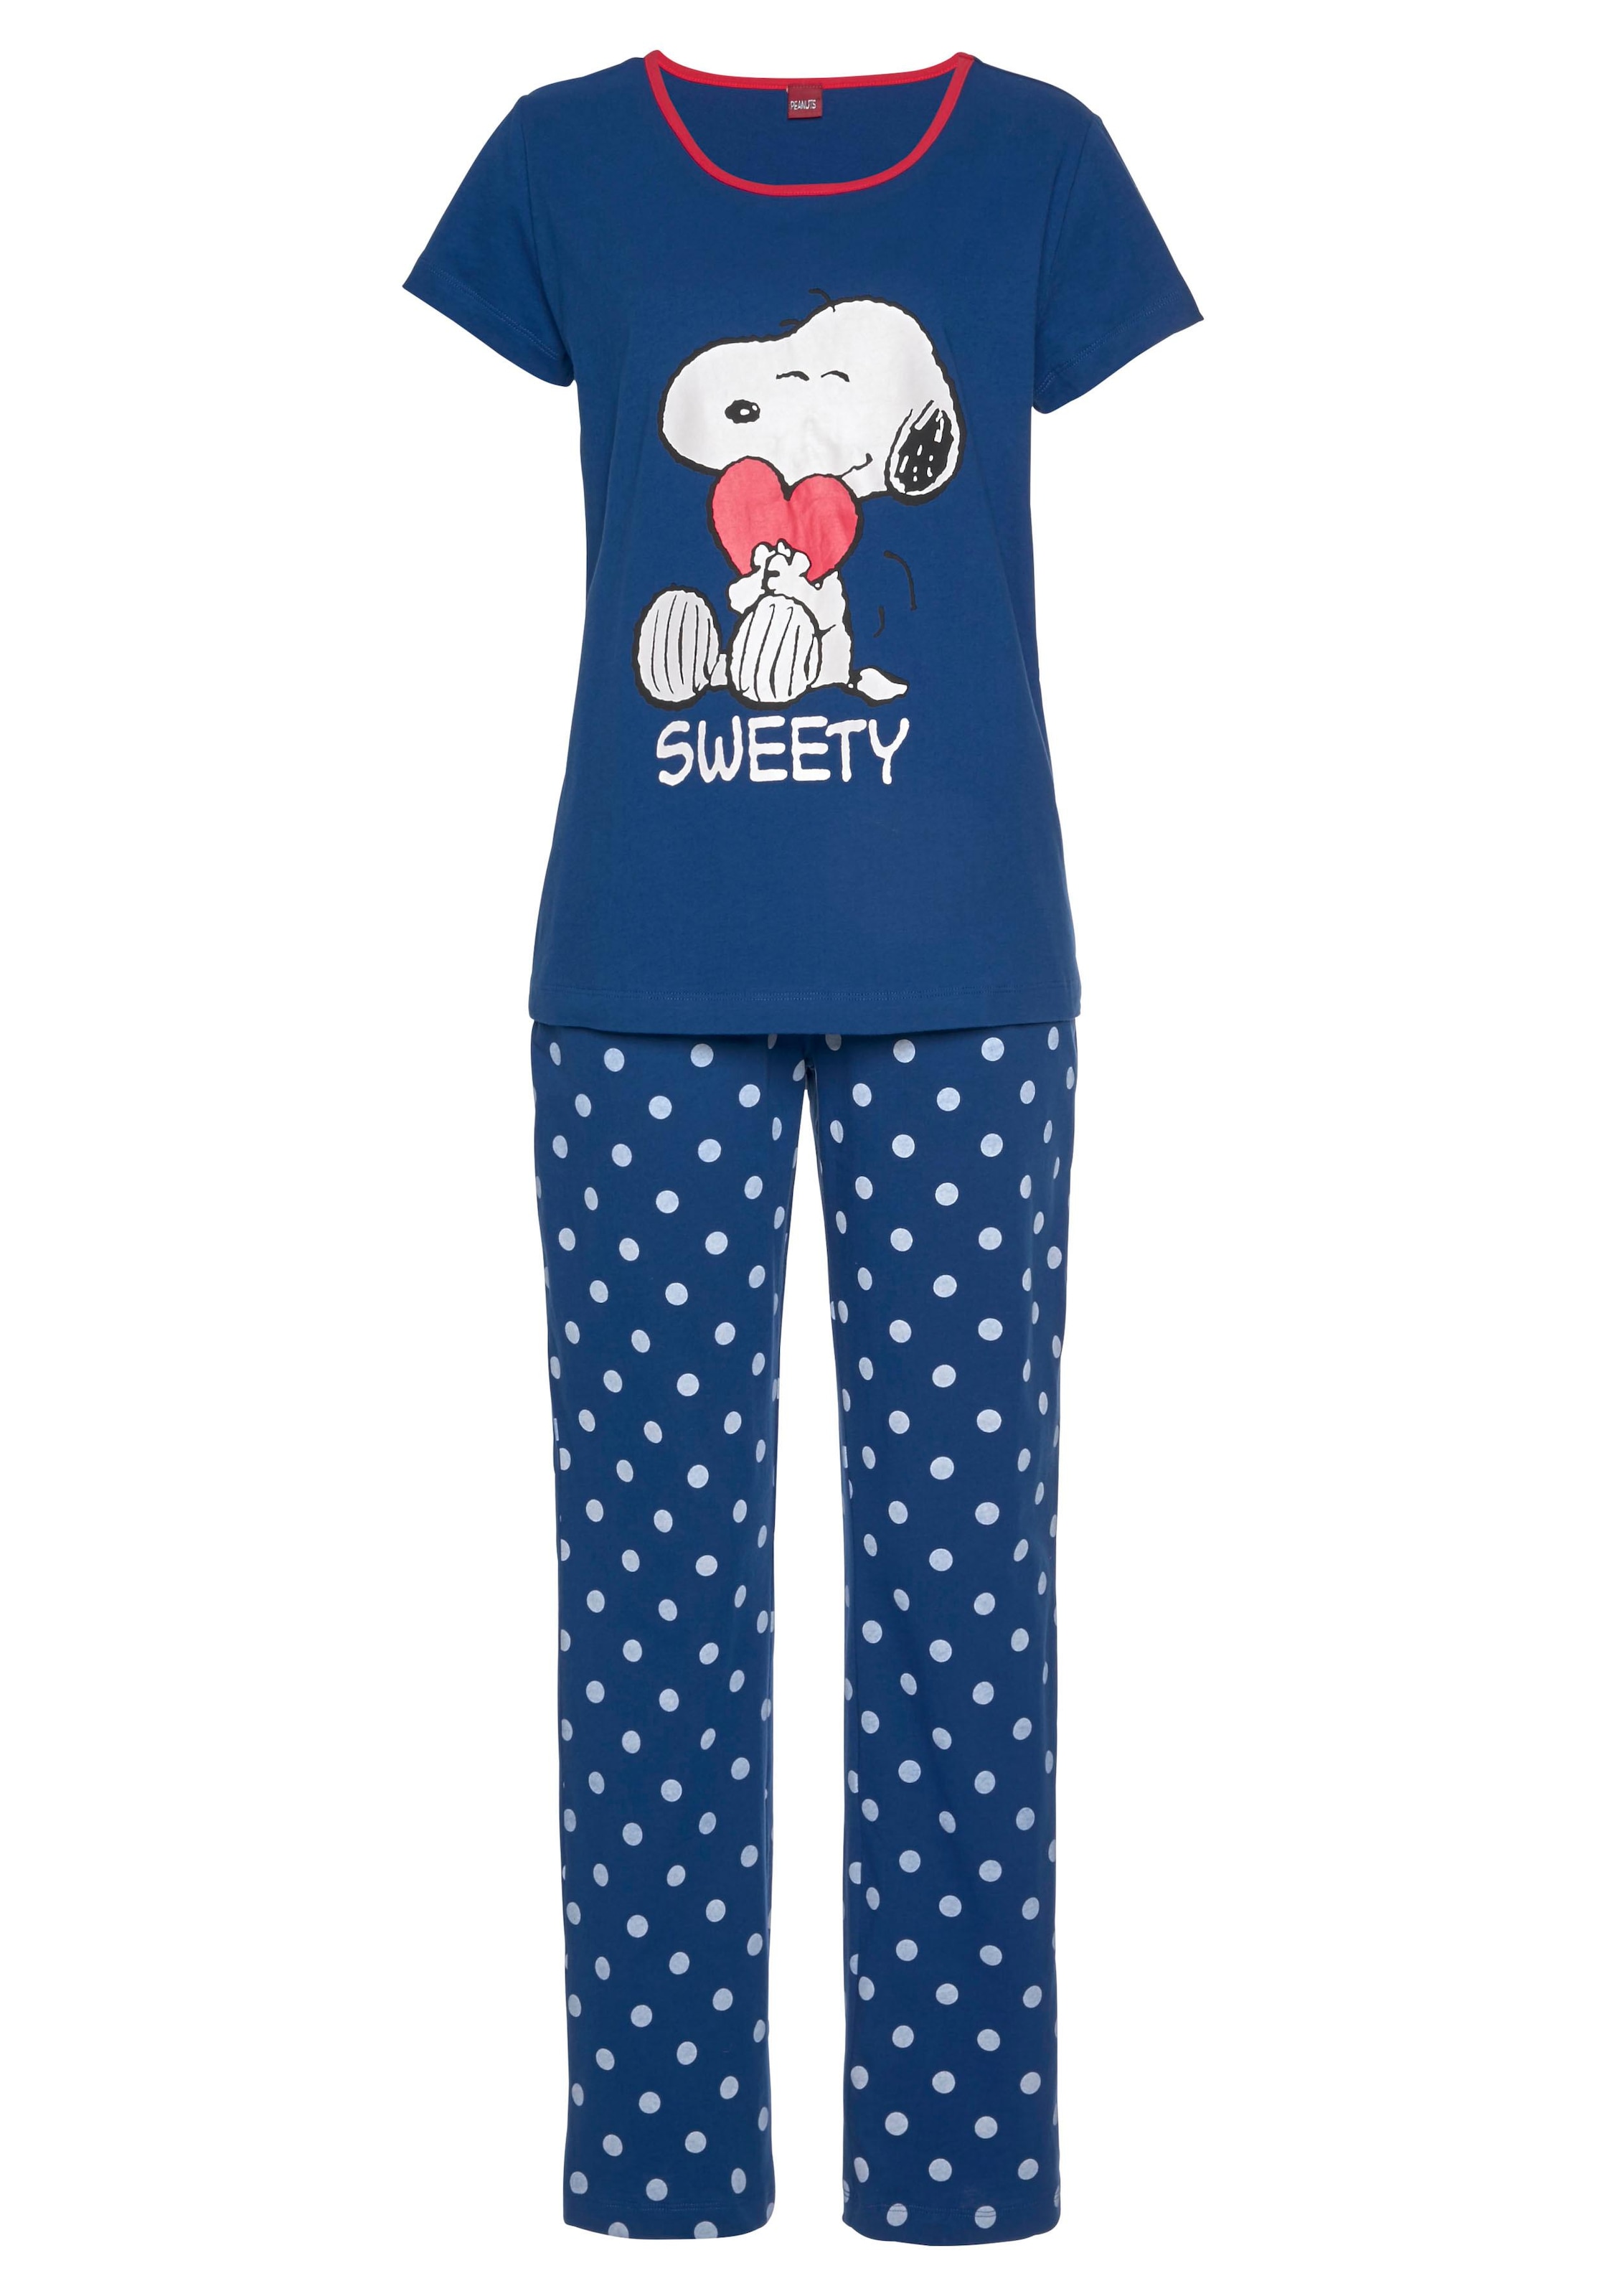 Peanuts Pyjama (2 1 Snoopy-Druck und mit Stück) Pünktchen-Hose tlg